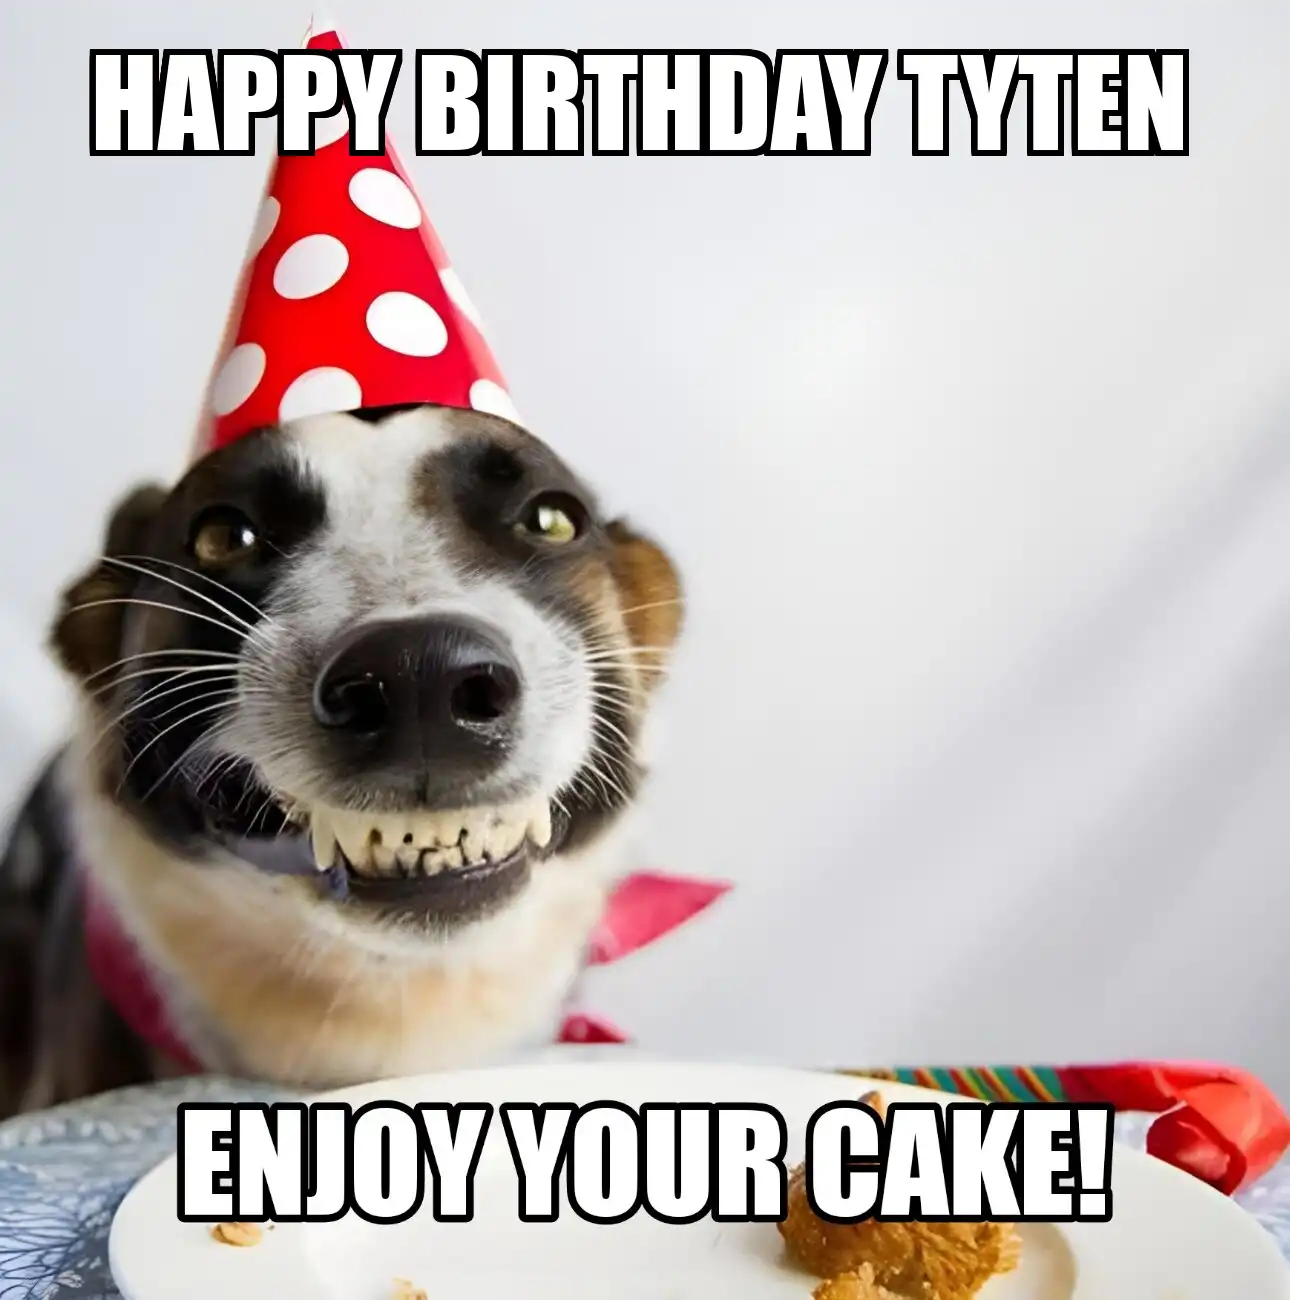 Happy Birthday Tyten Enjoy Your Cake Dog Meme